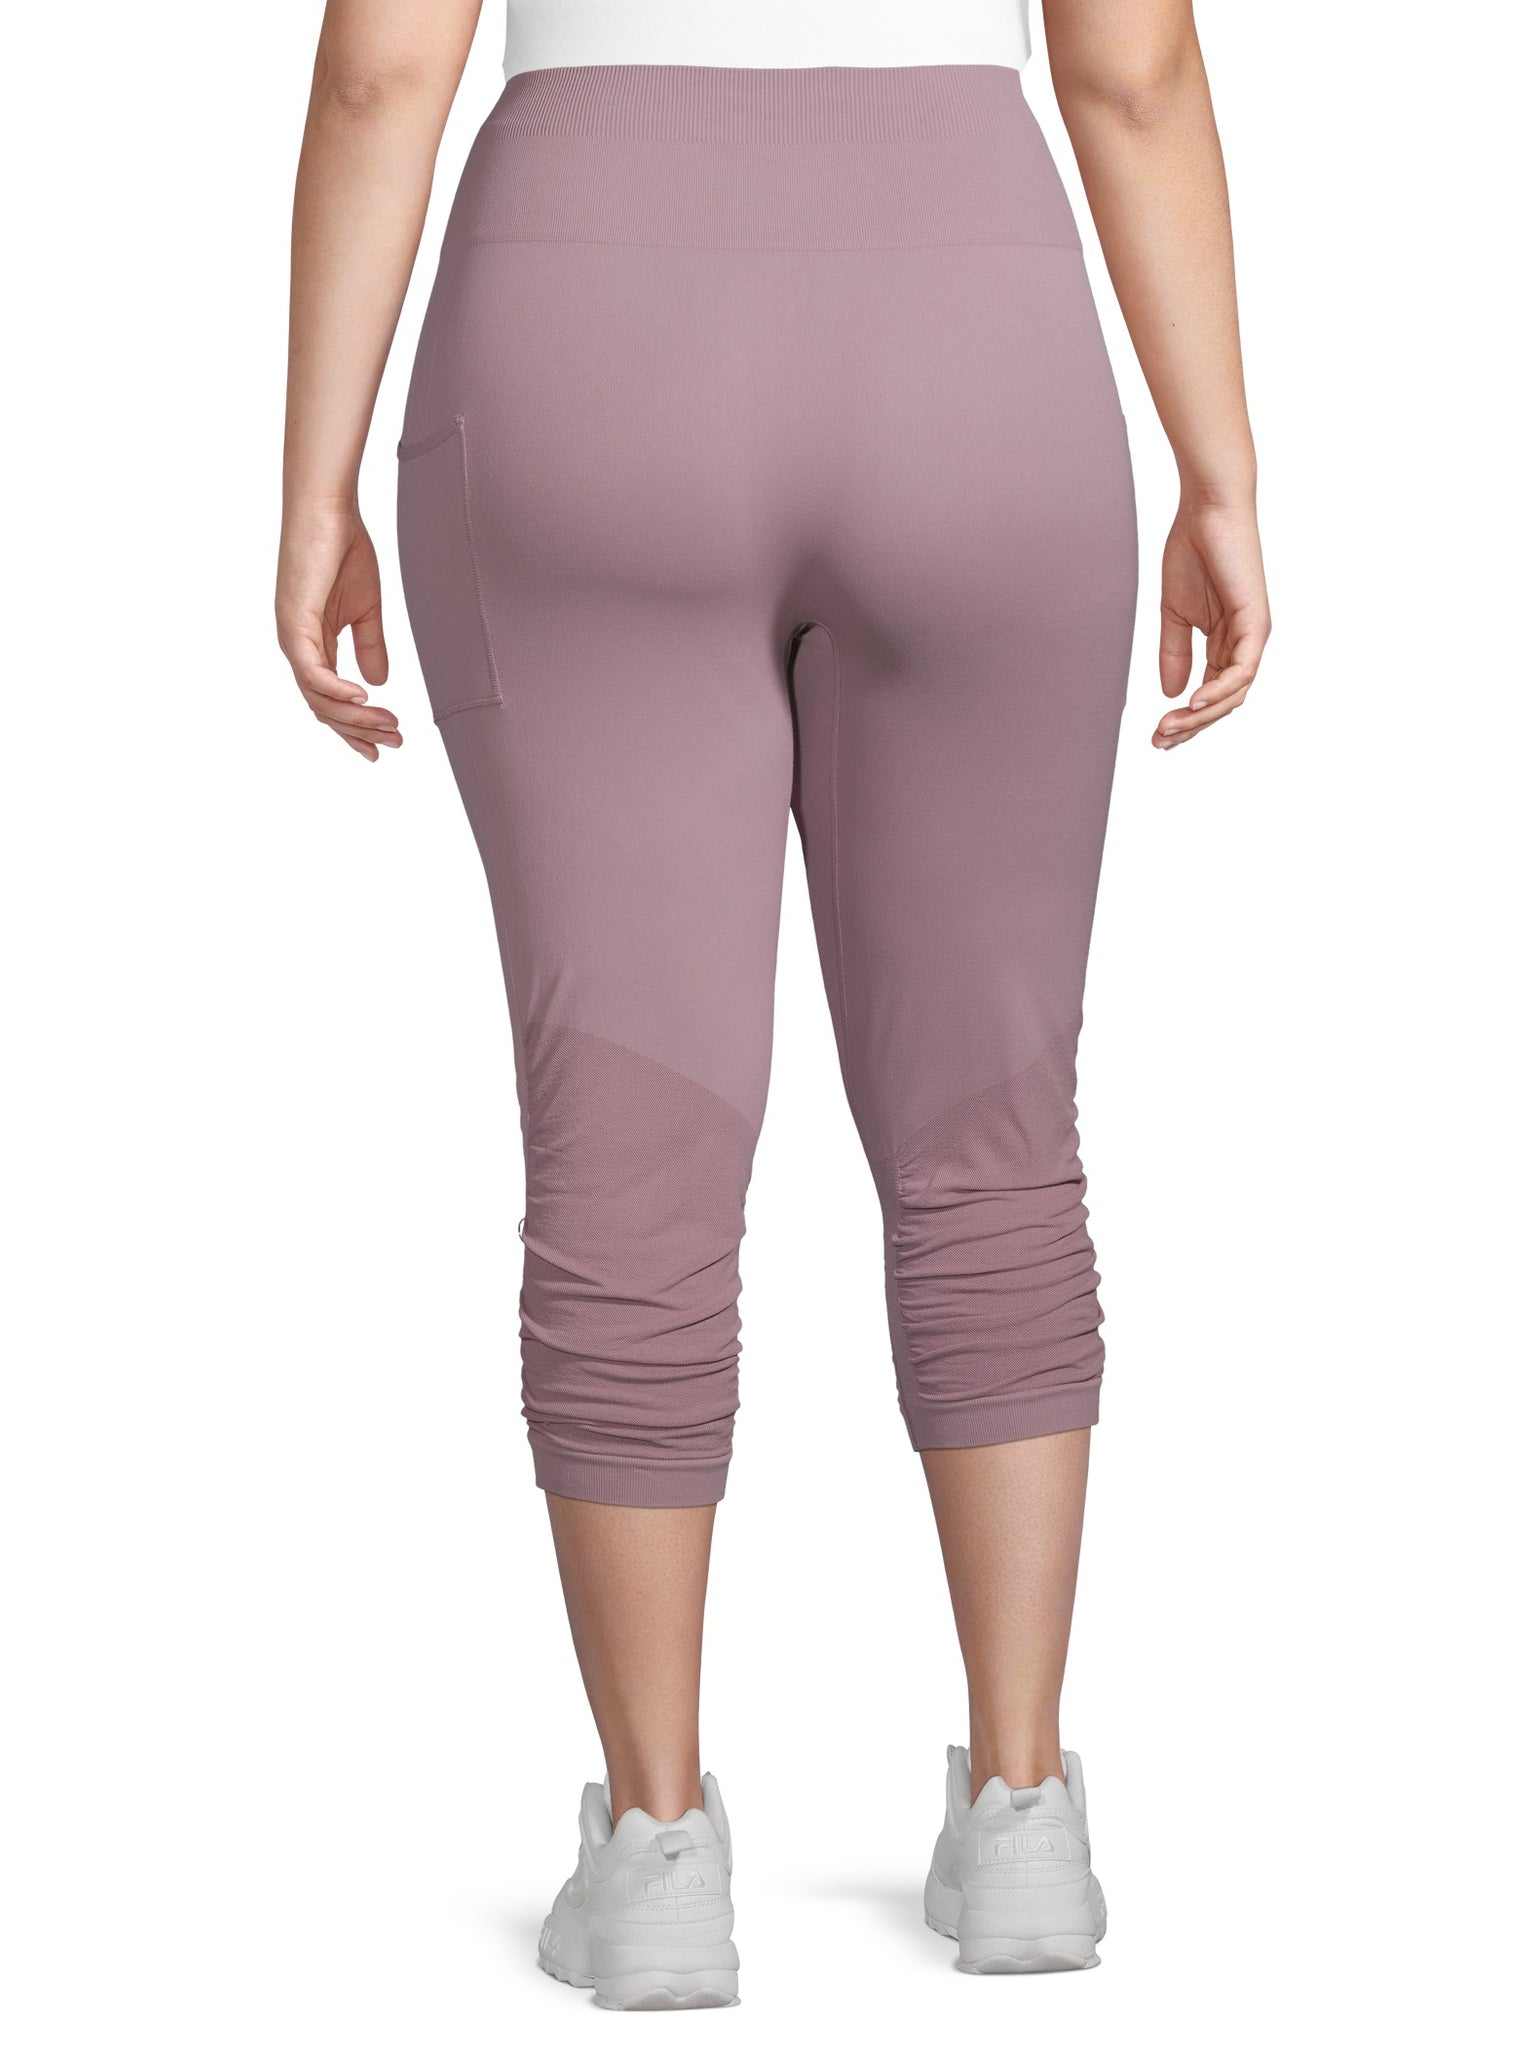 Women's plus size capri pants in multiple colors